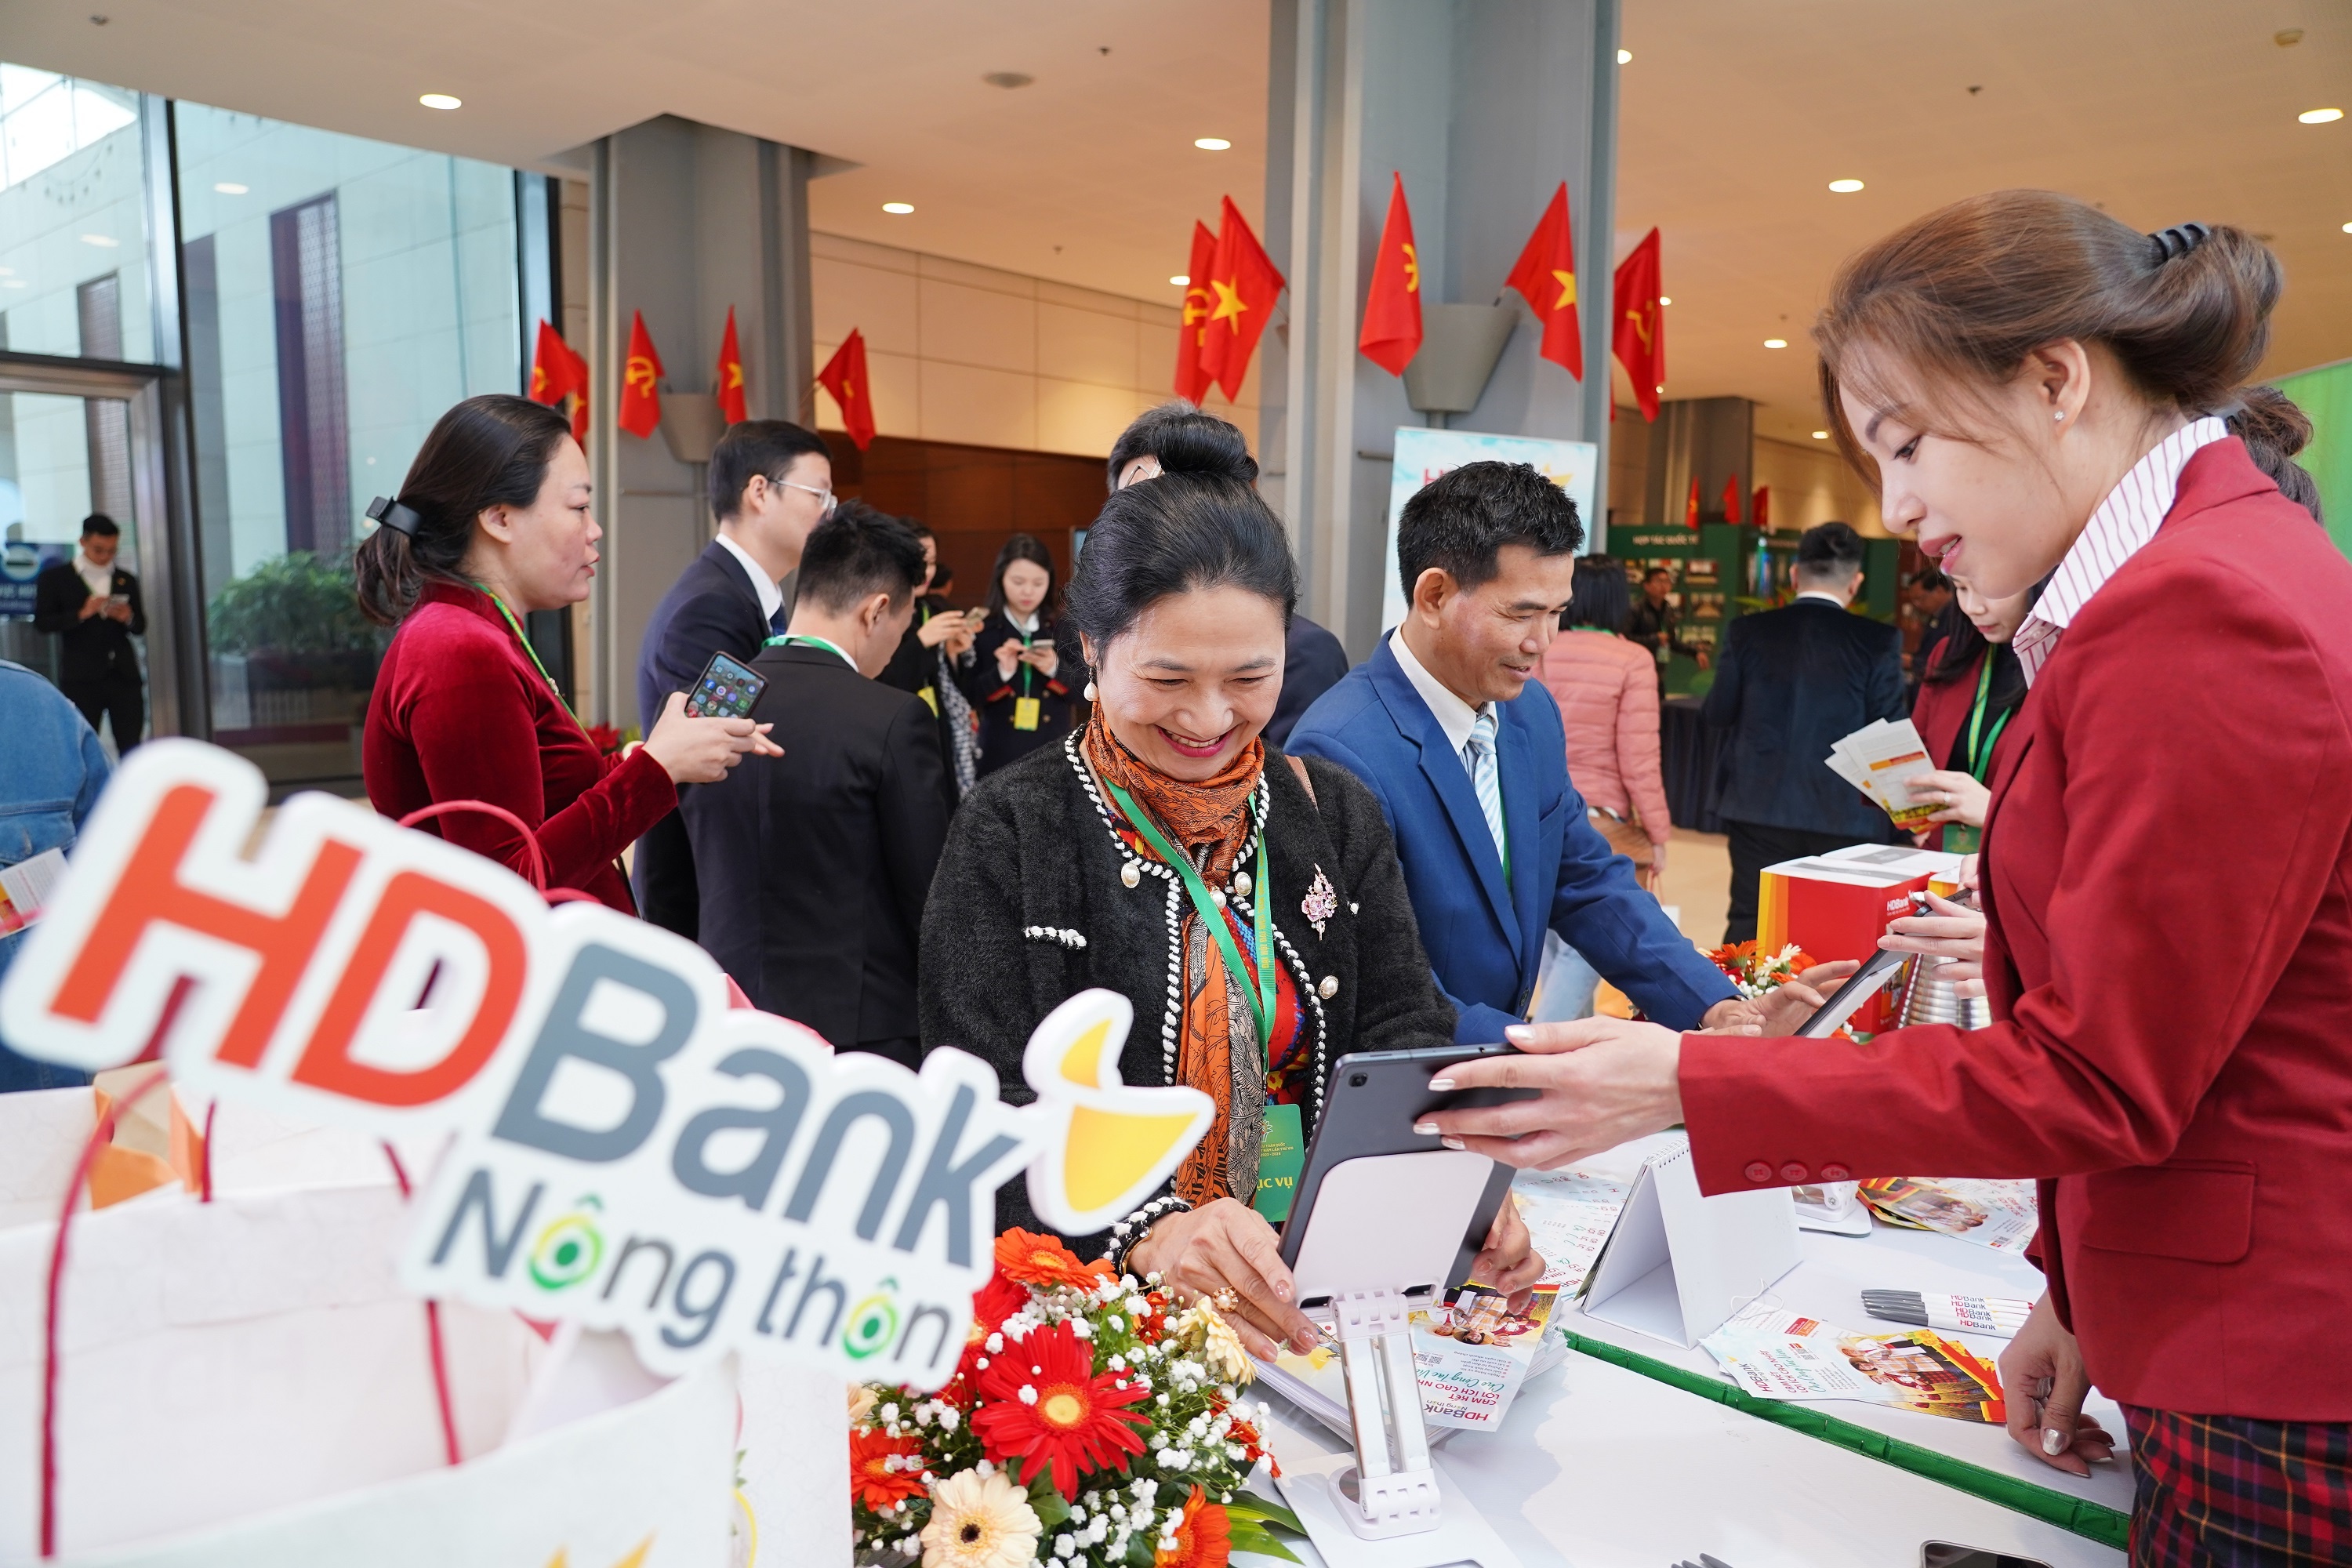 Tại Đại hội Hội Nông dân Việt Nam lần thứ VIII (tháng 12/2023), HDBank lần đầu tiên ra mắt Dịch vụ HDBank Nông thôn – giải pháp tài chính chuyên biệt và ưu việt, tích hợp công nghệ thông minh cùng chương trình ưu đãi “Cho vay nông nghiệp nông thôn” với lãi suất 0%.